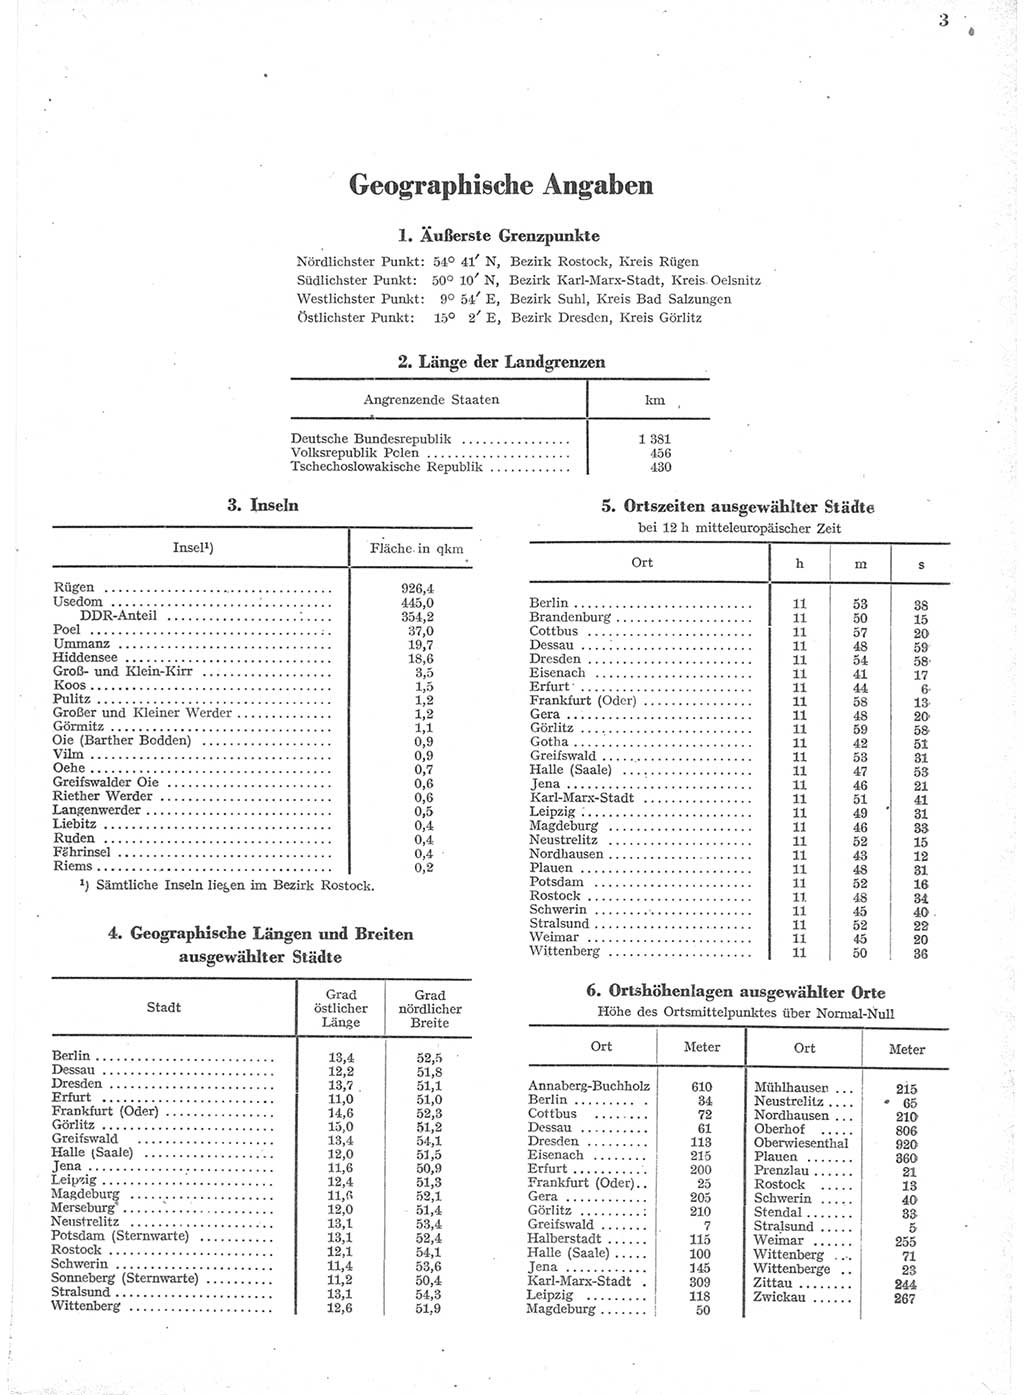 Statistisches Jahrbuch der Deutschen Demokratischen Republik (DDR) 1957, Seite 3 (Stat. Jb. DDR 1957, S. 3)